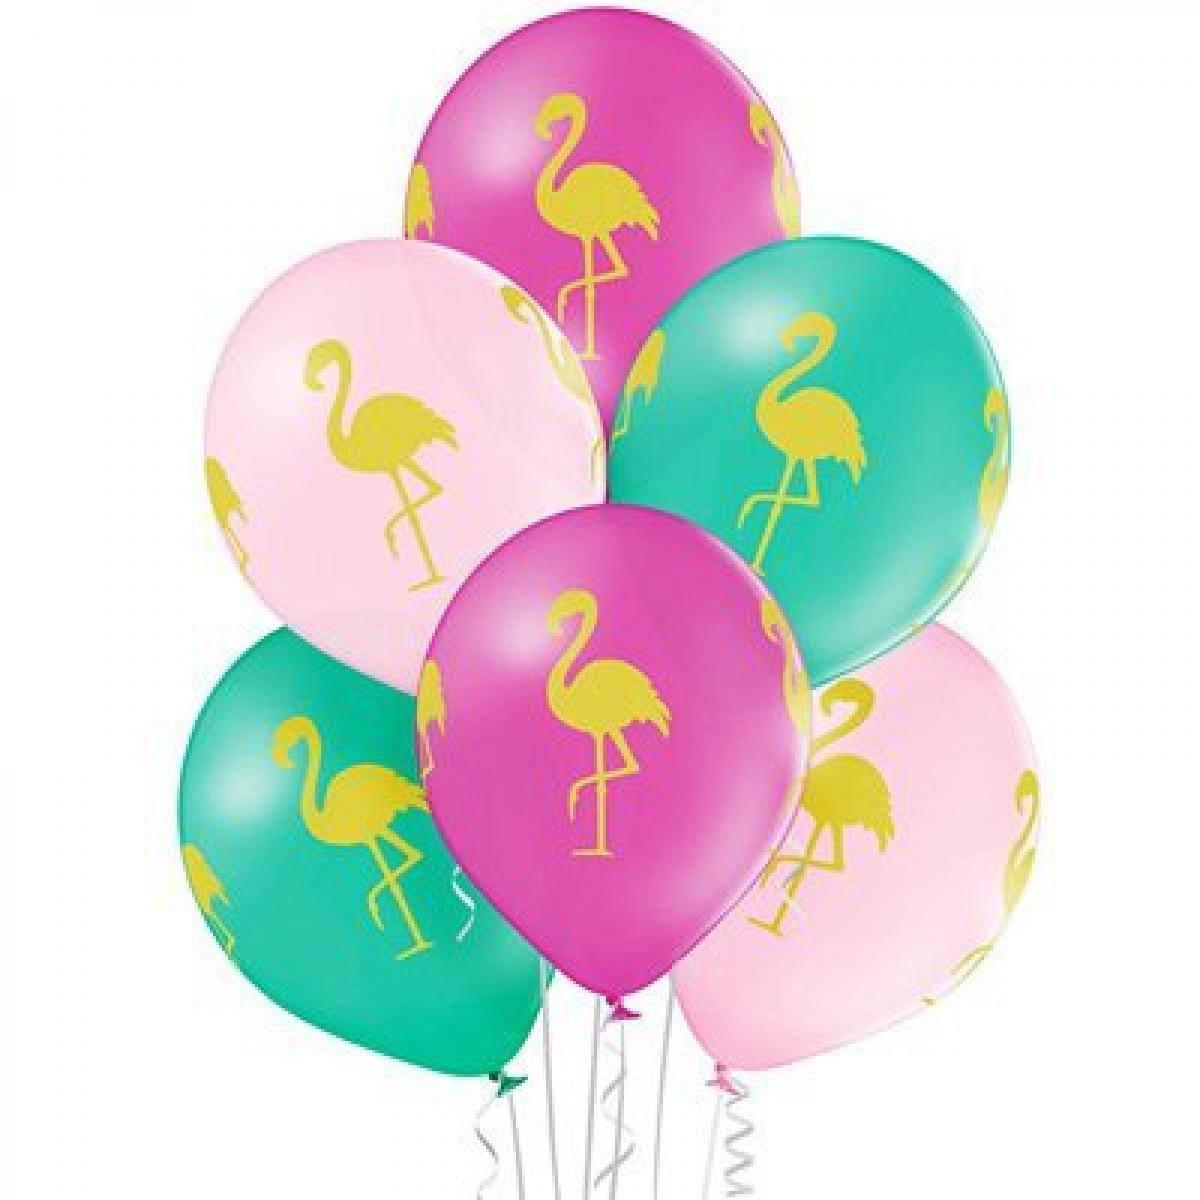 Купить шары в москве недорого с доставкой. Шар 12" Фламинго Бельгия. Шар латекс Фламинго Кристалл. Воздушный шарик. Гелиевые шары.